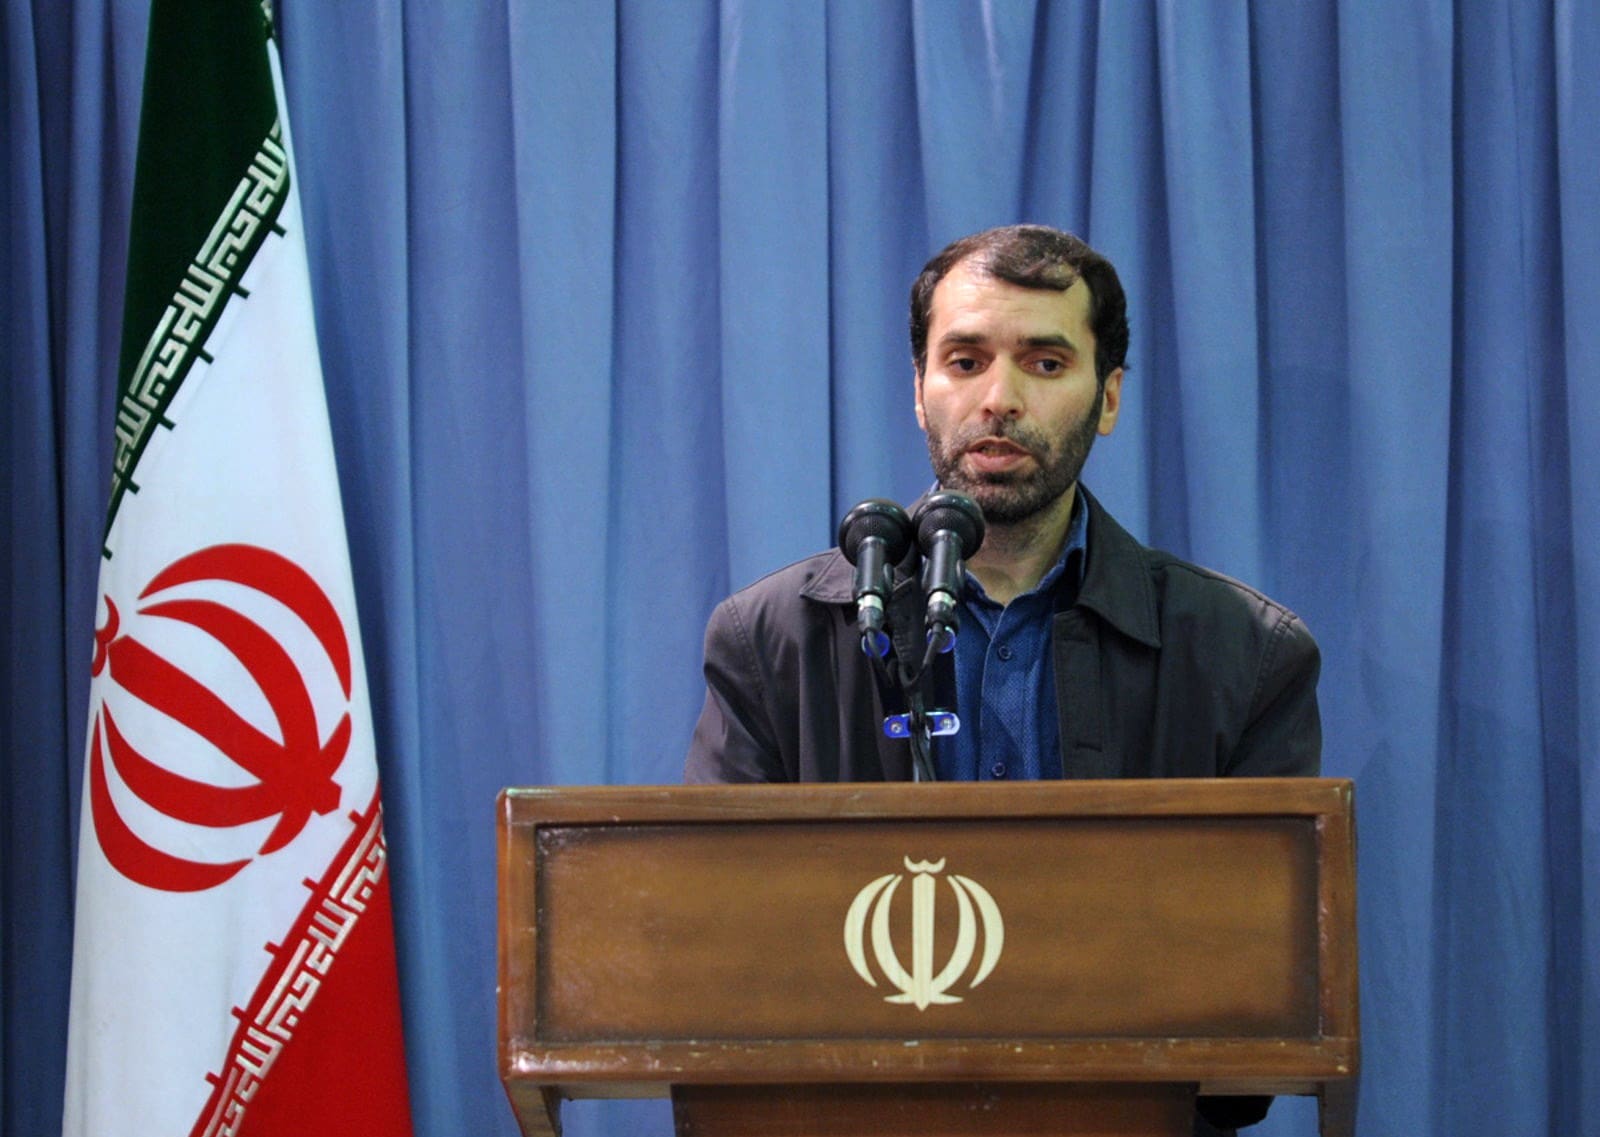 ผู้นำสูงสุดของอิหร่าน